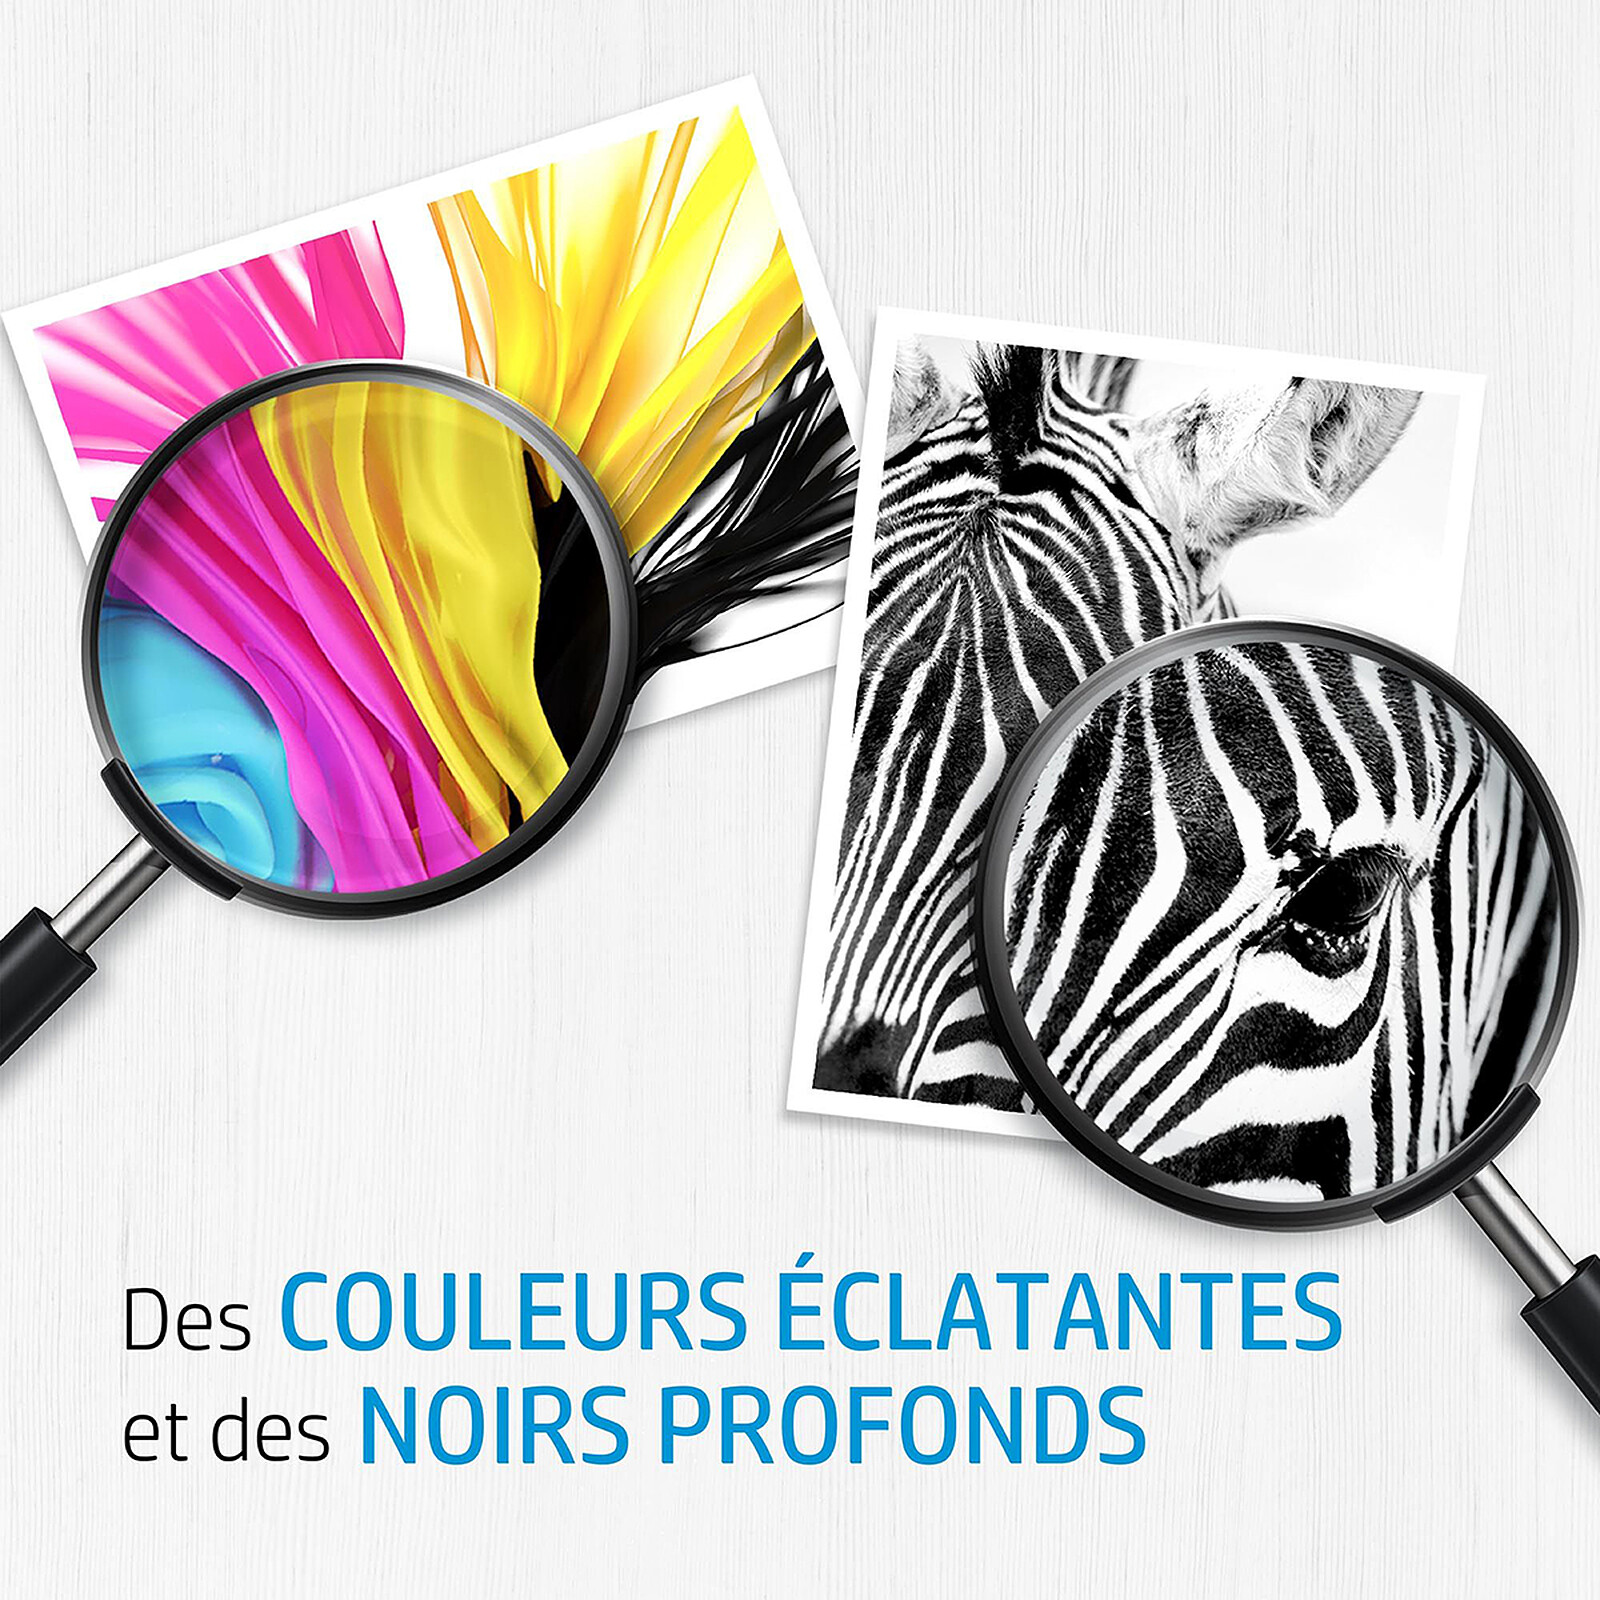 COMETE - HP 301XL - 2 Cartouches compatibles HP 301XL - Noir et Couleur -  Marque française - Cartouche imprimante - LDLC